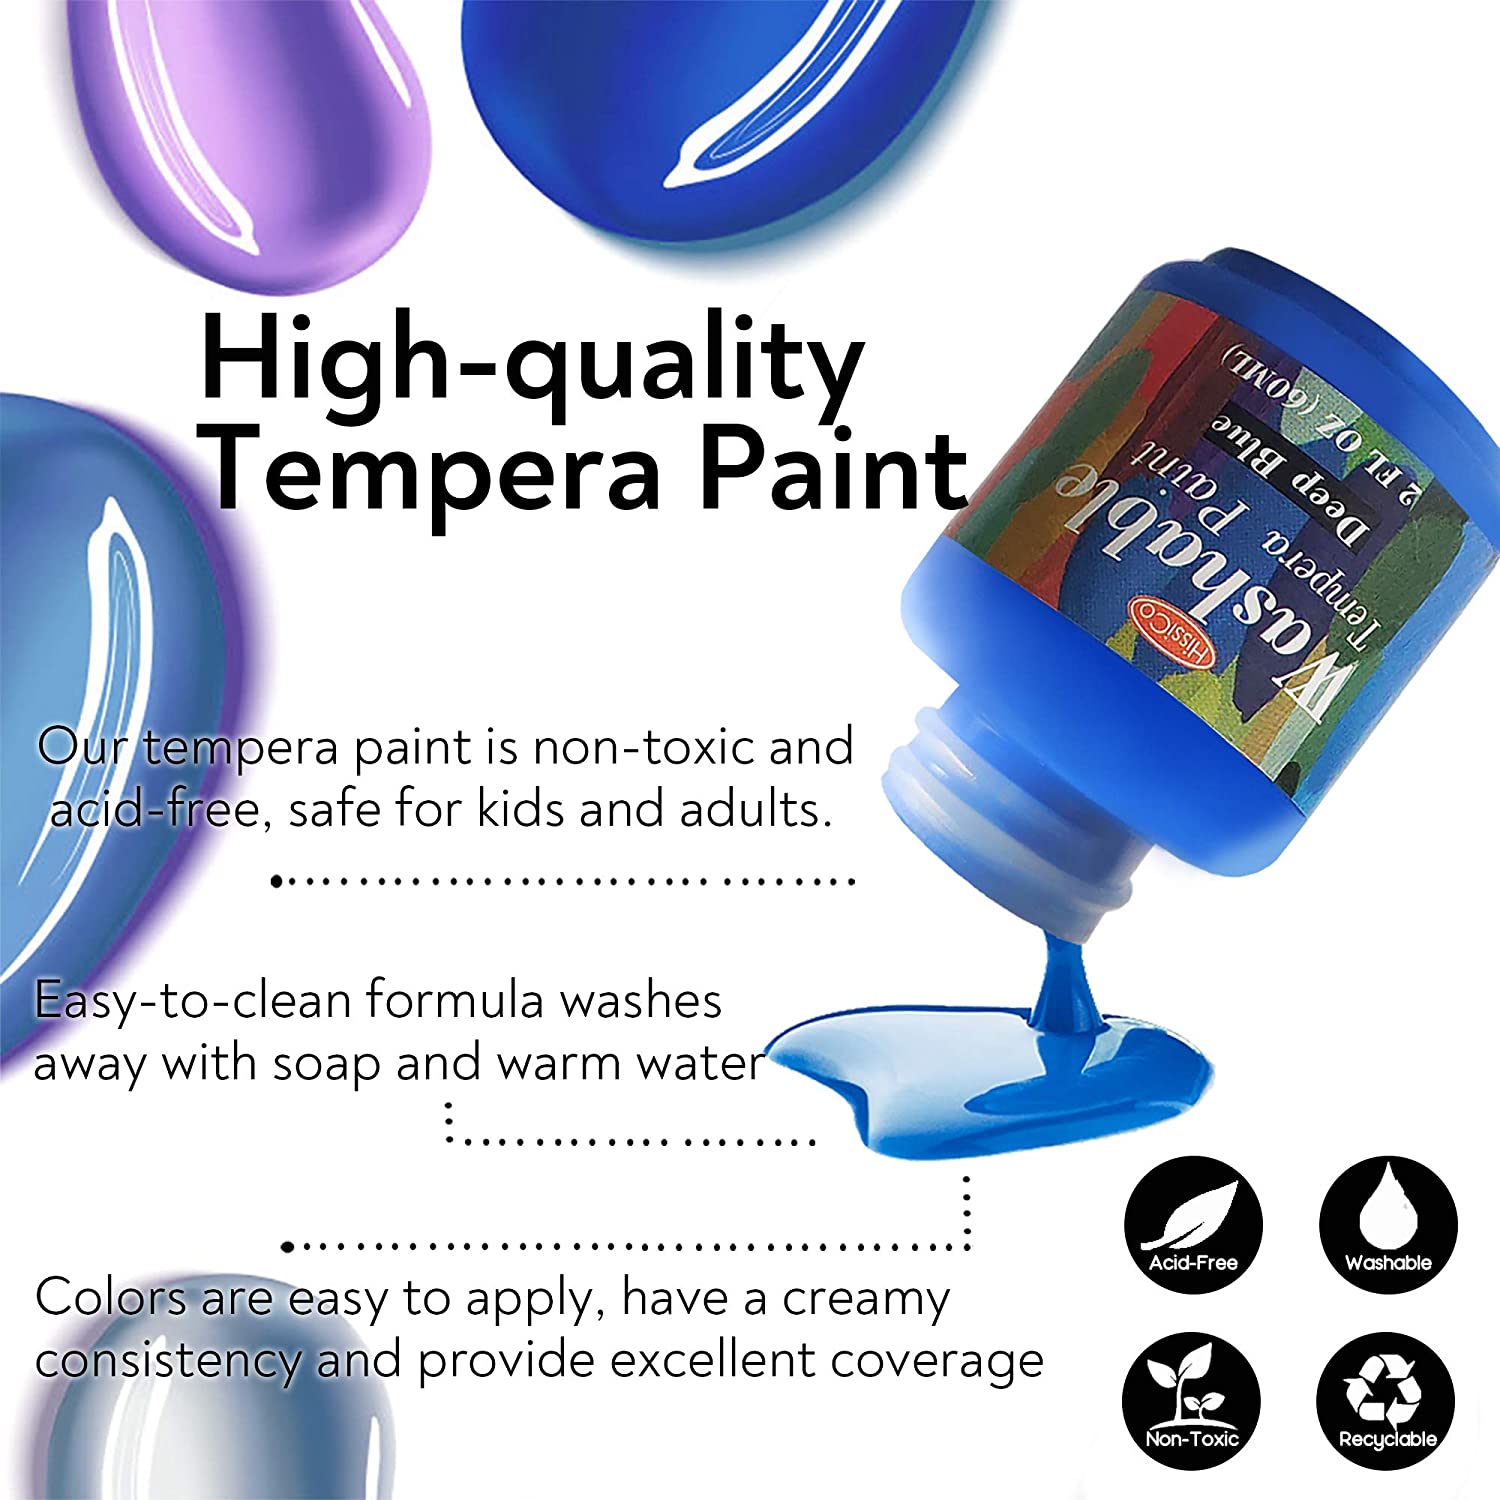 Washable Tempera Paint for Kids,30 Colors (2 oz Each) Liquid